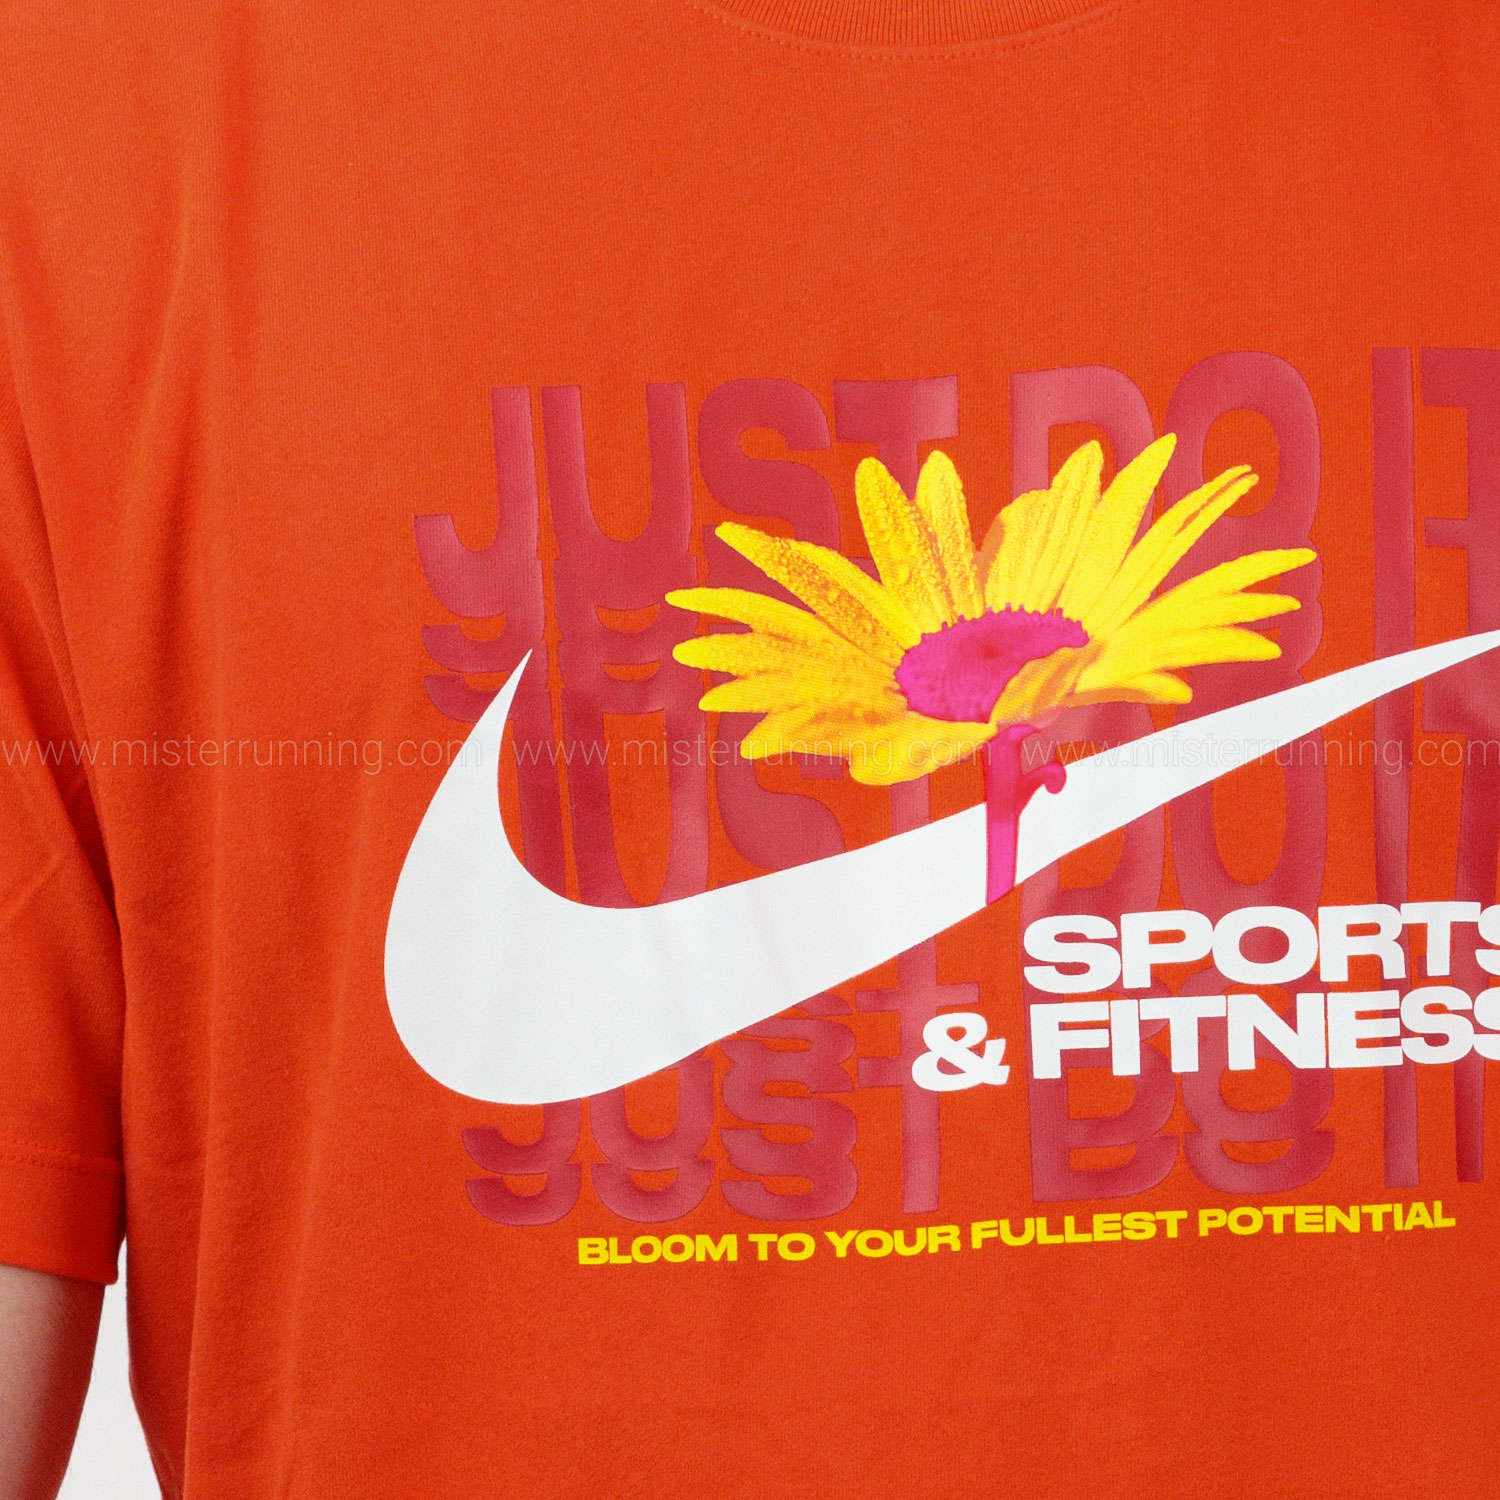 Nike Dri-FIT Swoosh T-Shirt - Team Orange